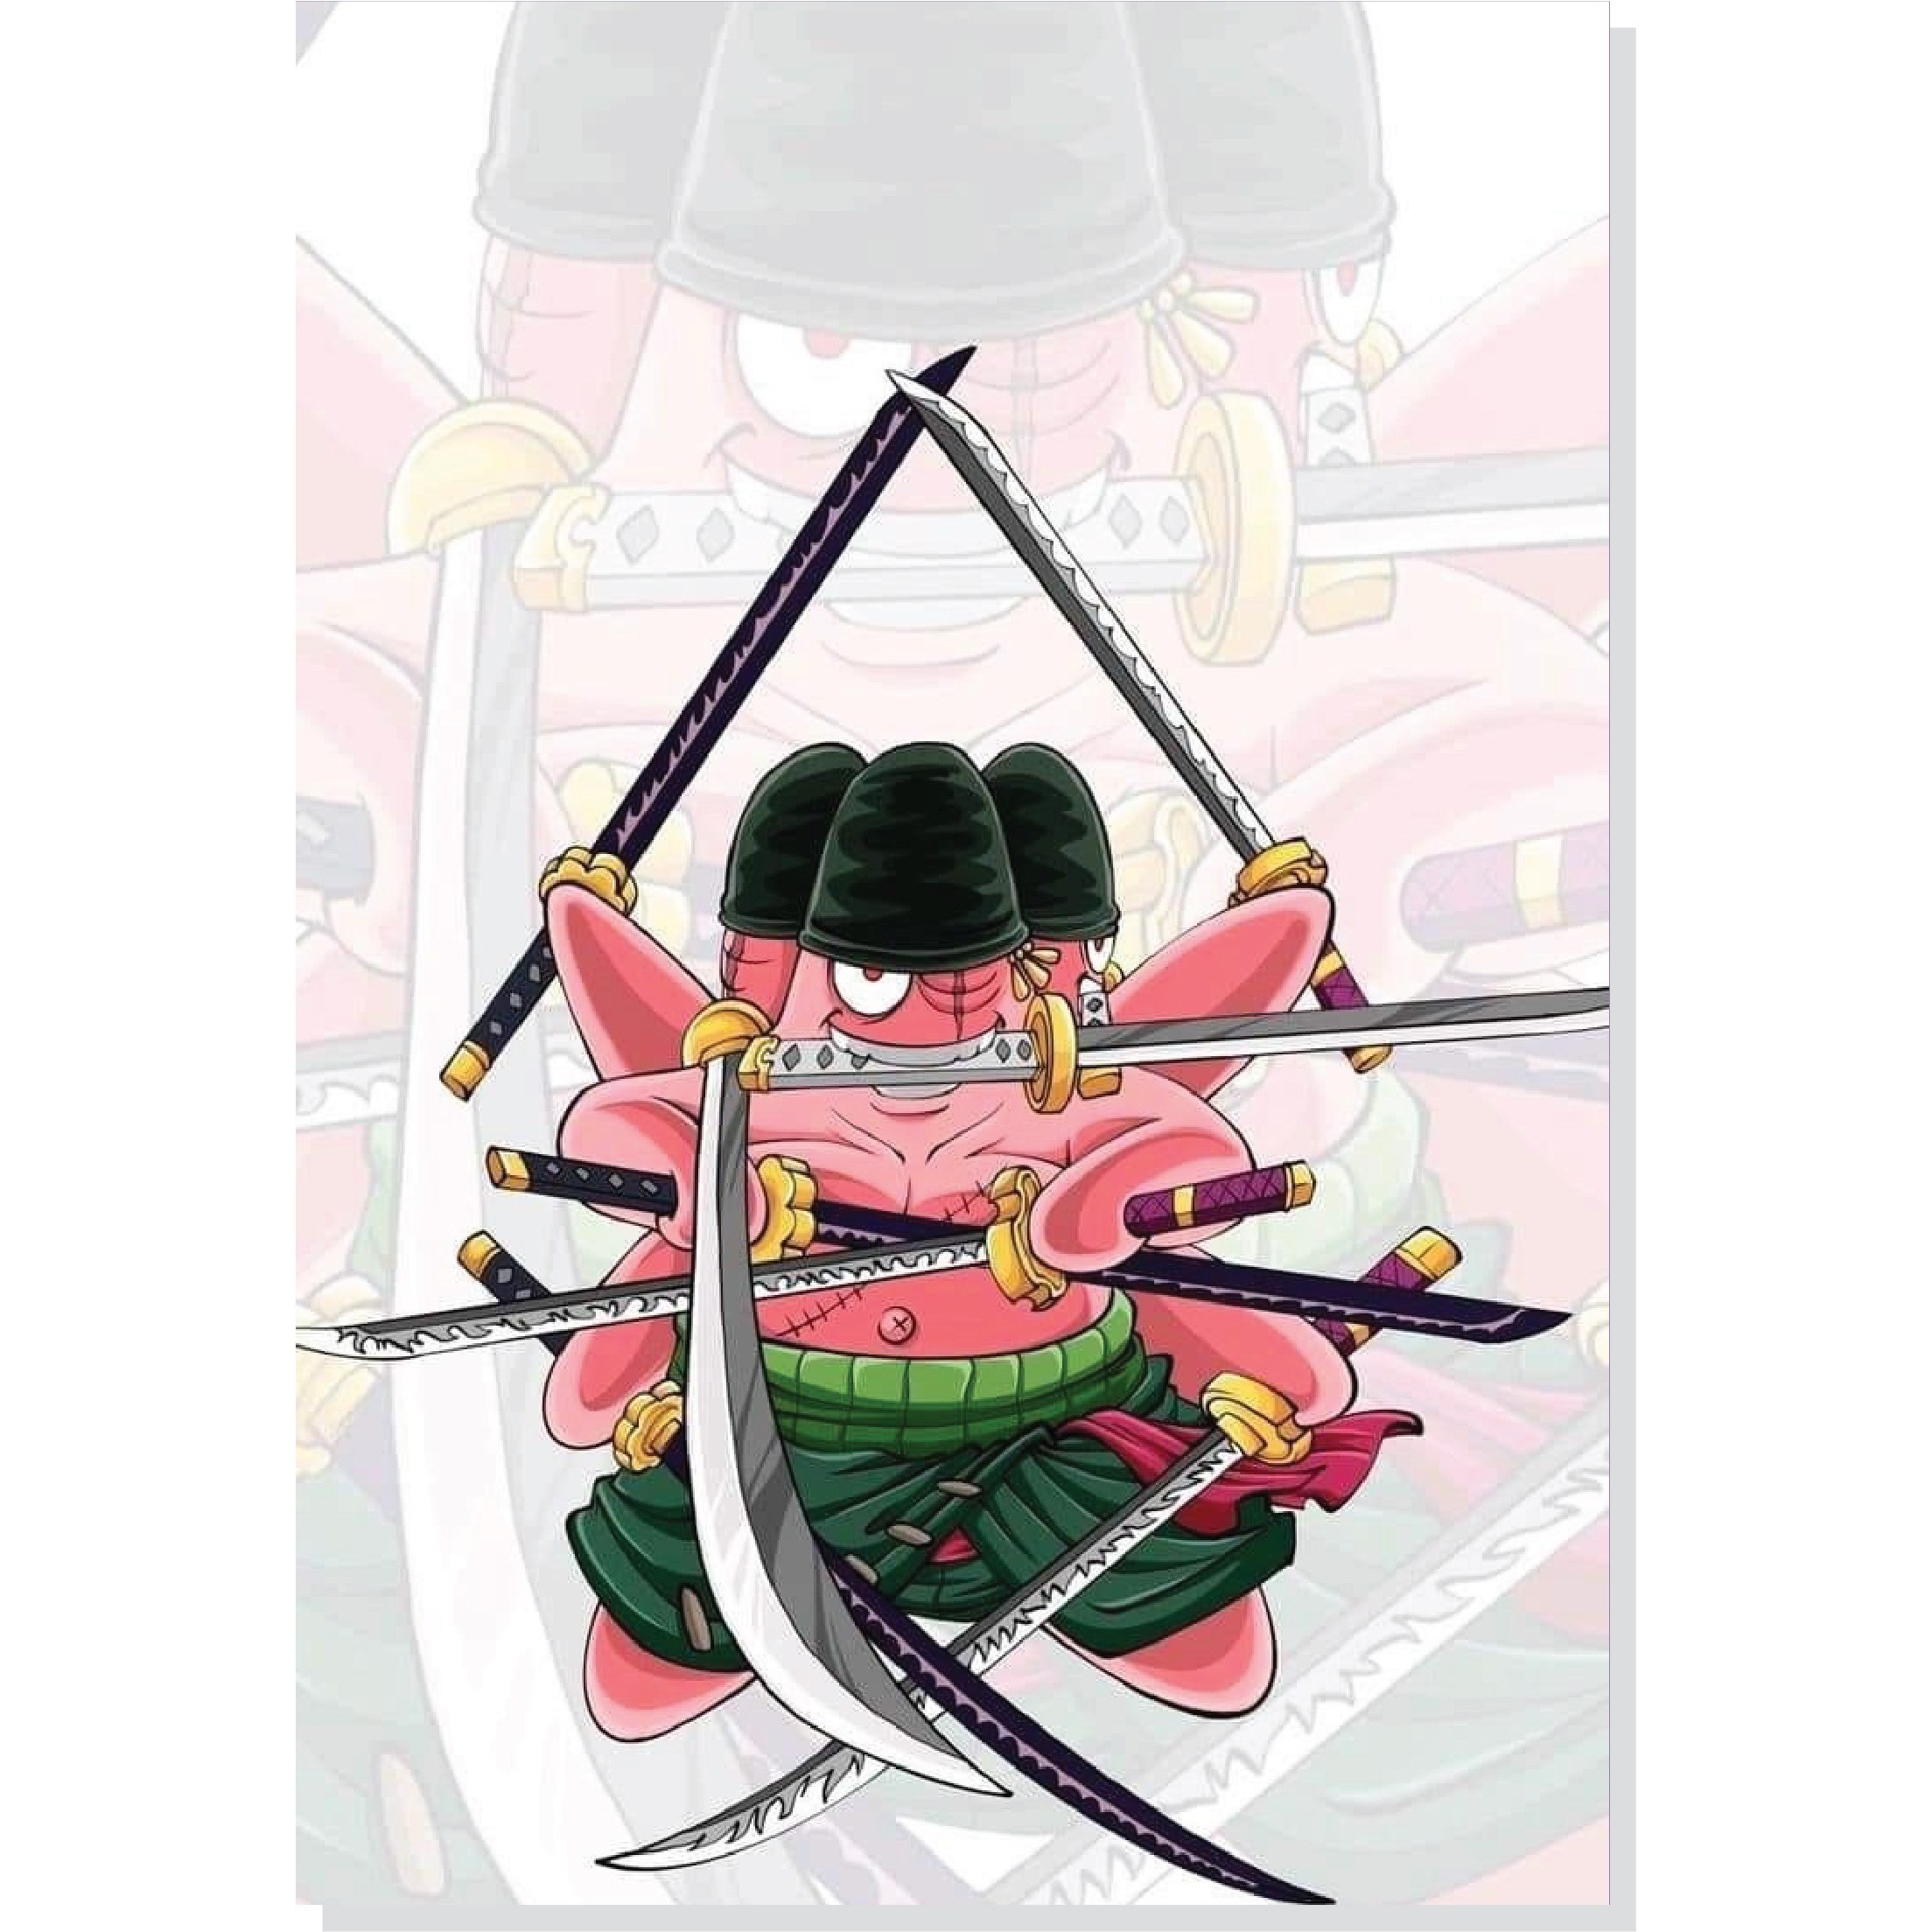 Ichibansho Figure One Piece Armor Warrior Luffytaro